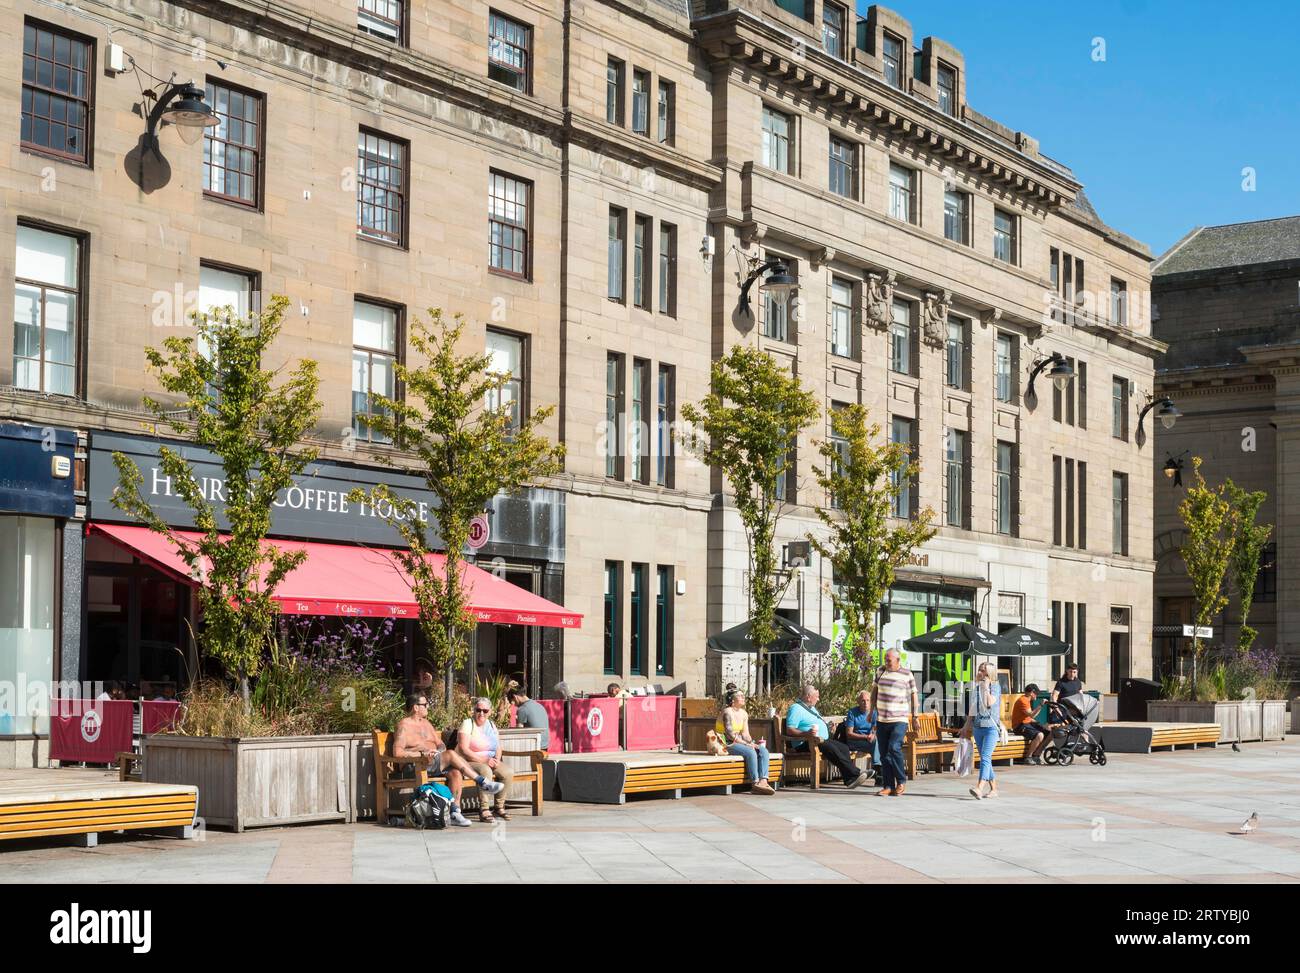 Gente sentada en el sol. Plaza de la ciudad, Dundee, Escocia, Reino Unido Foto de stock